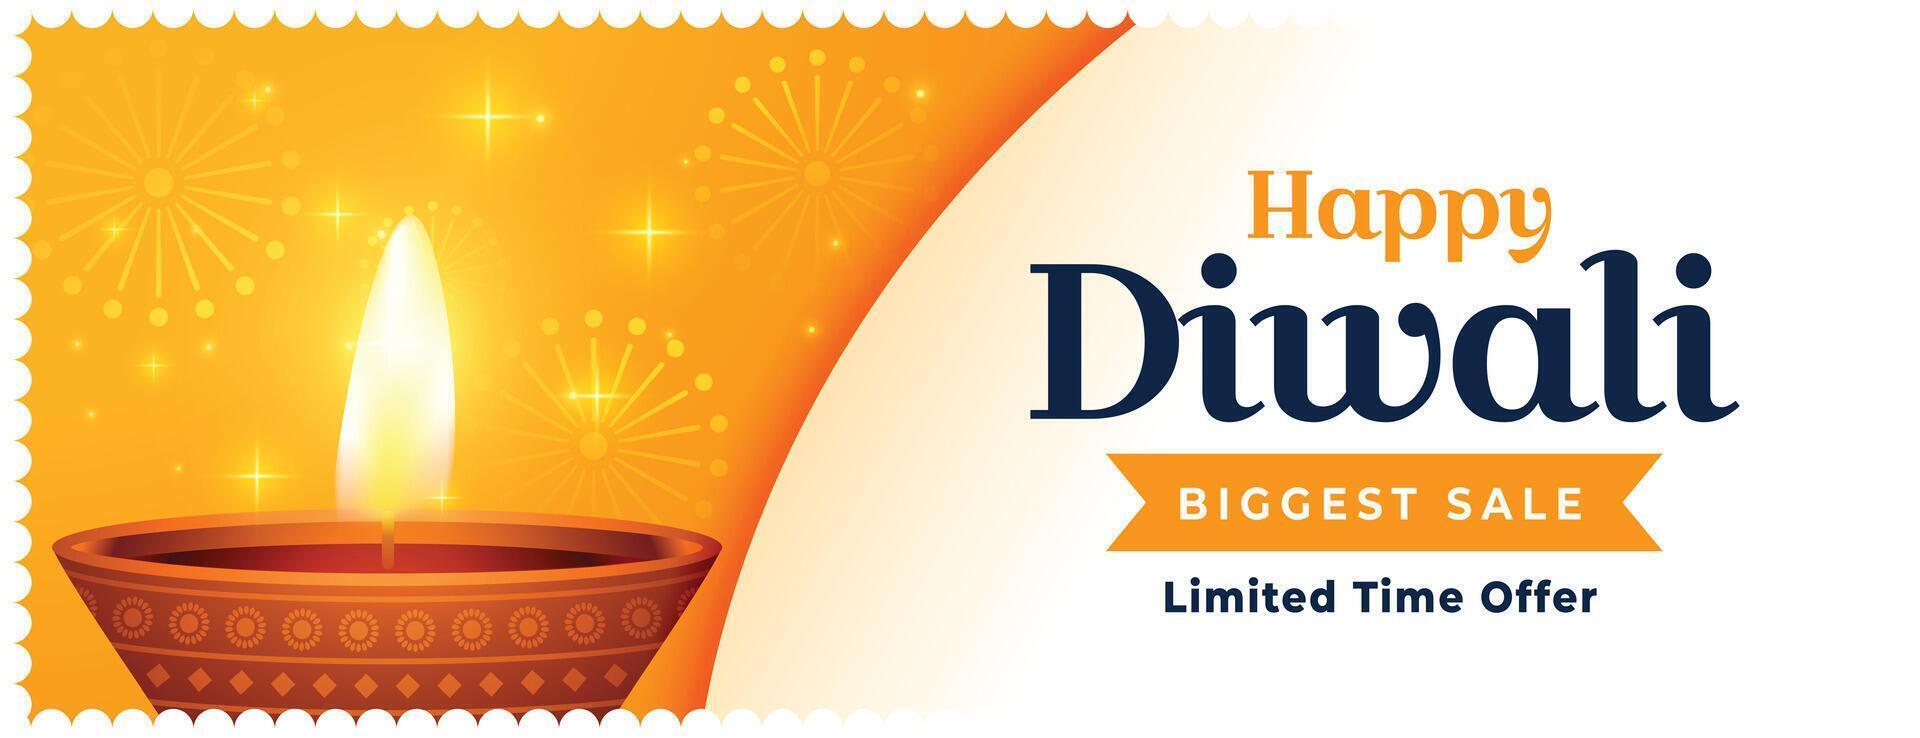 biggest sale and offer banner for festival of lights diwali vector